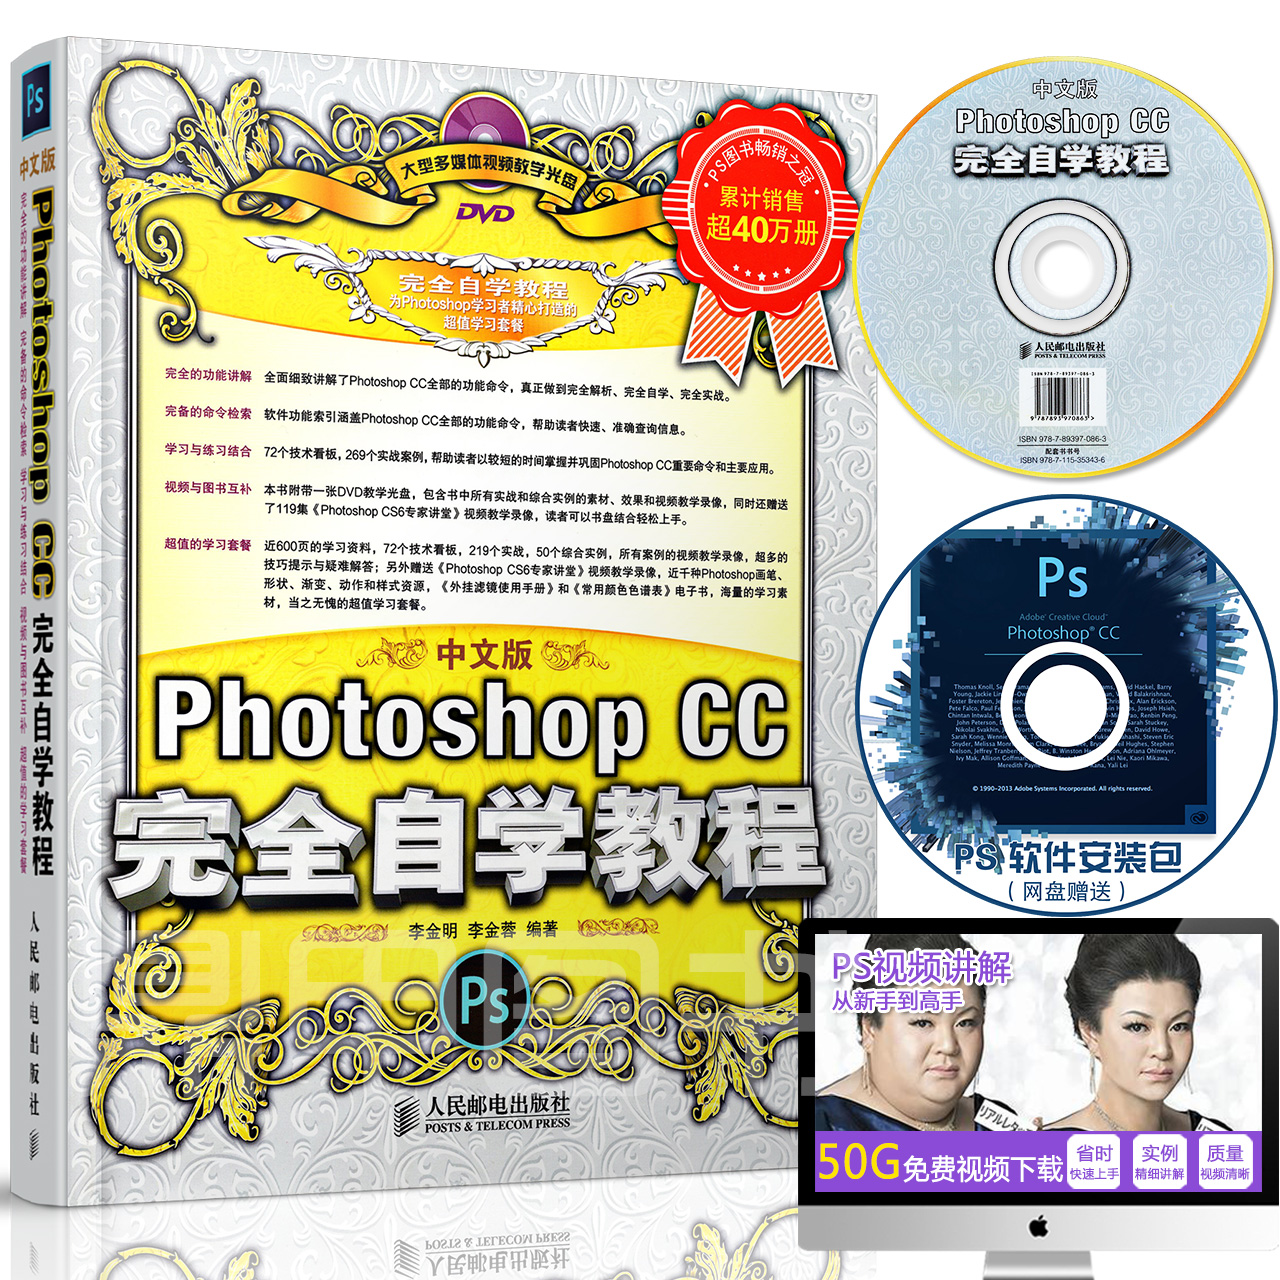 正版赠光盘软件中文版Photoshop CC 完全自学